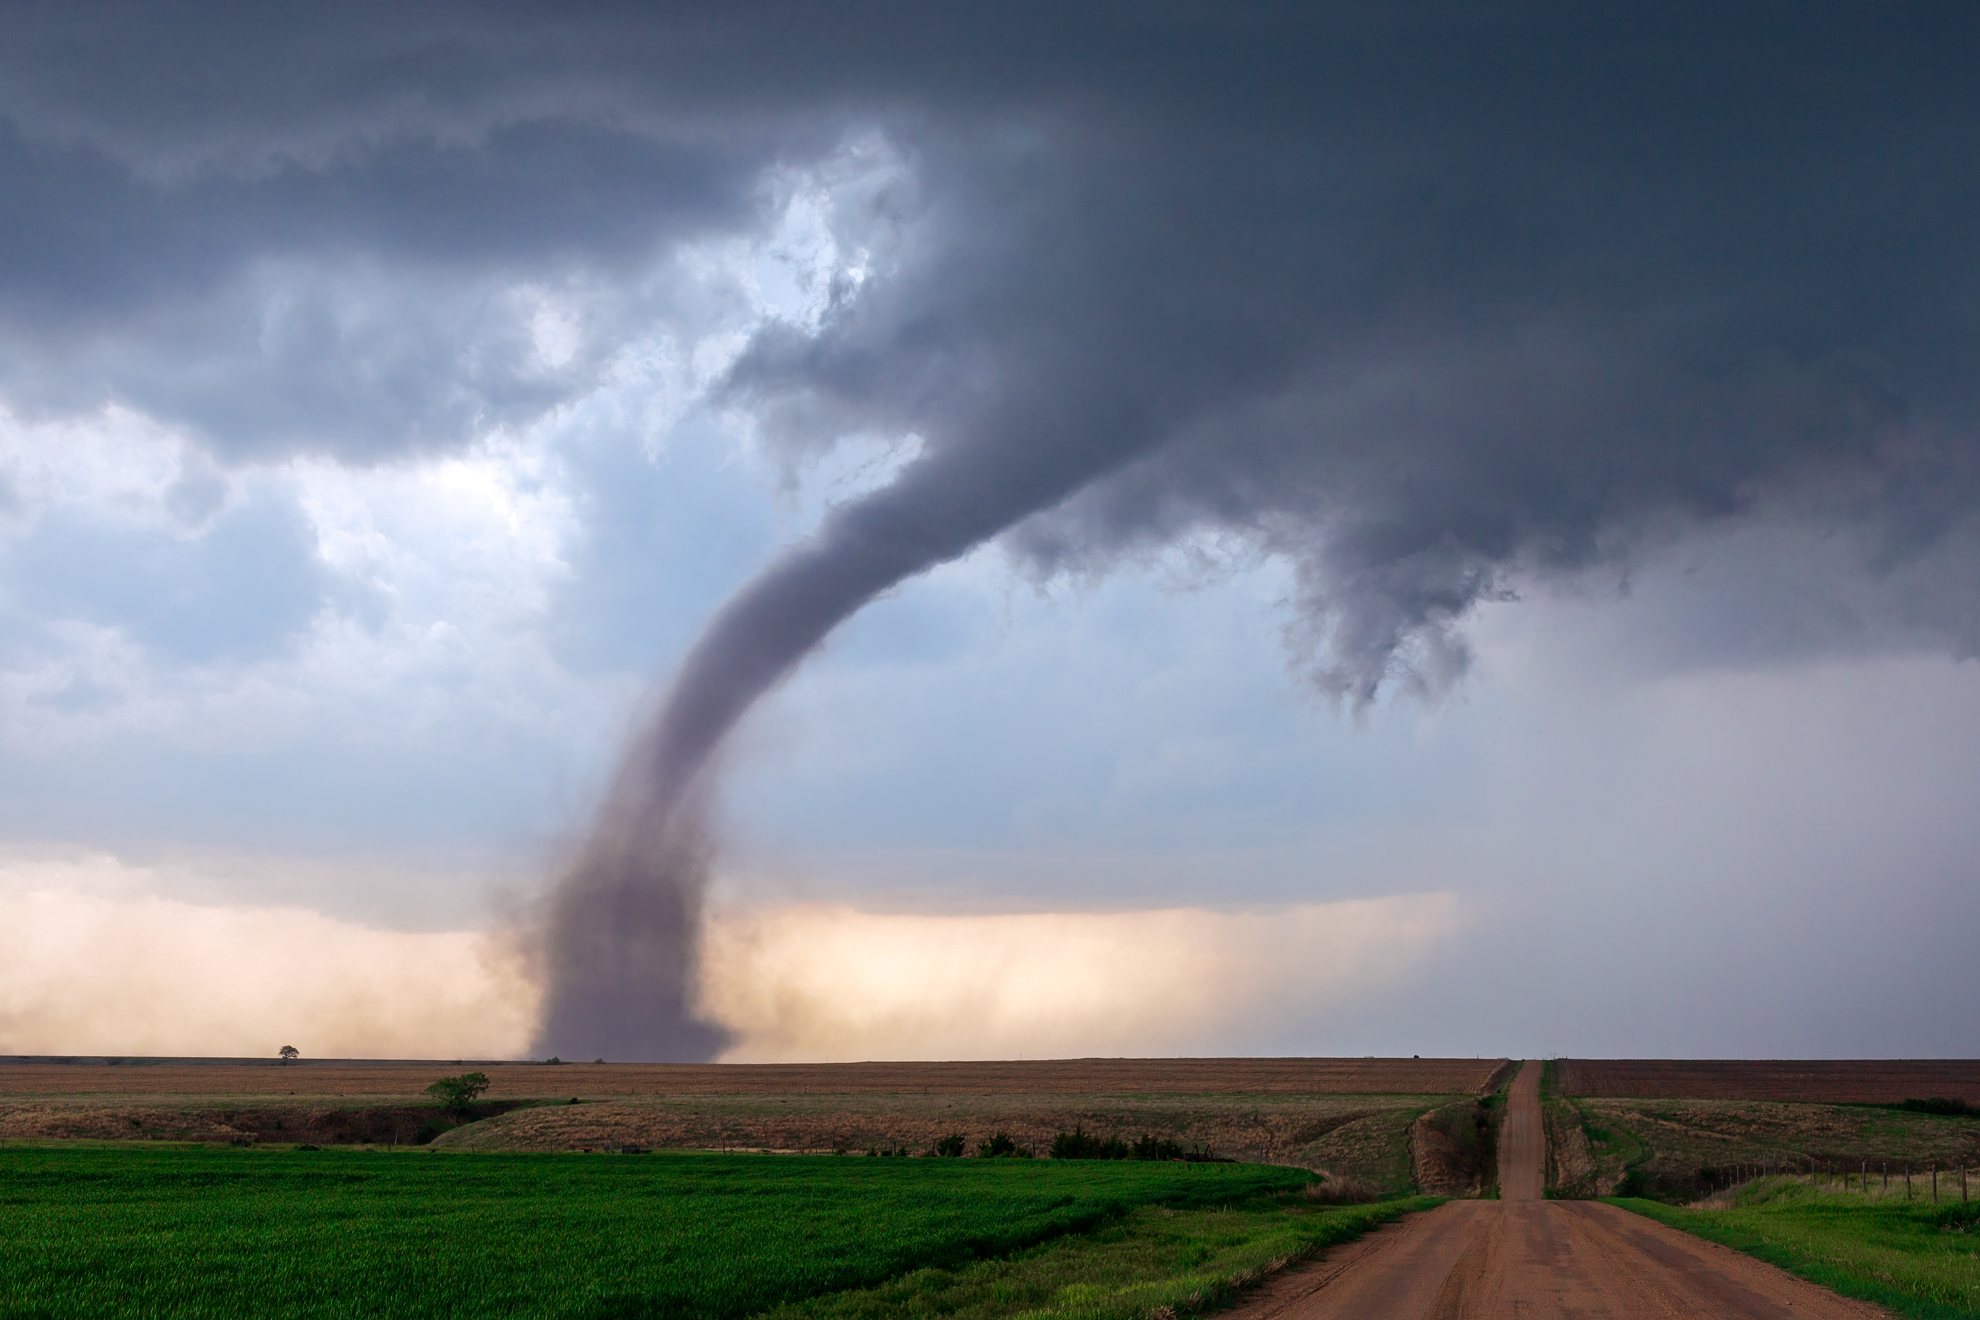 A tornado touching down in a rural farm area.